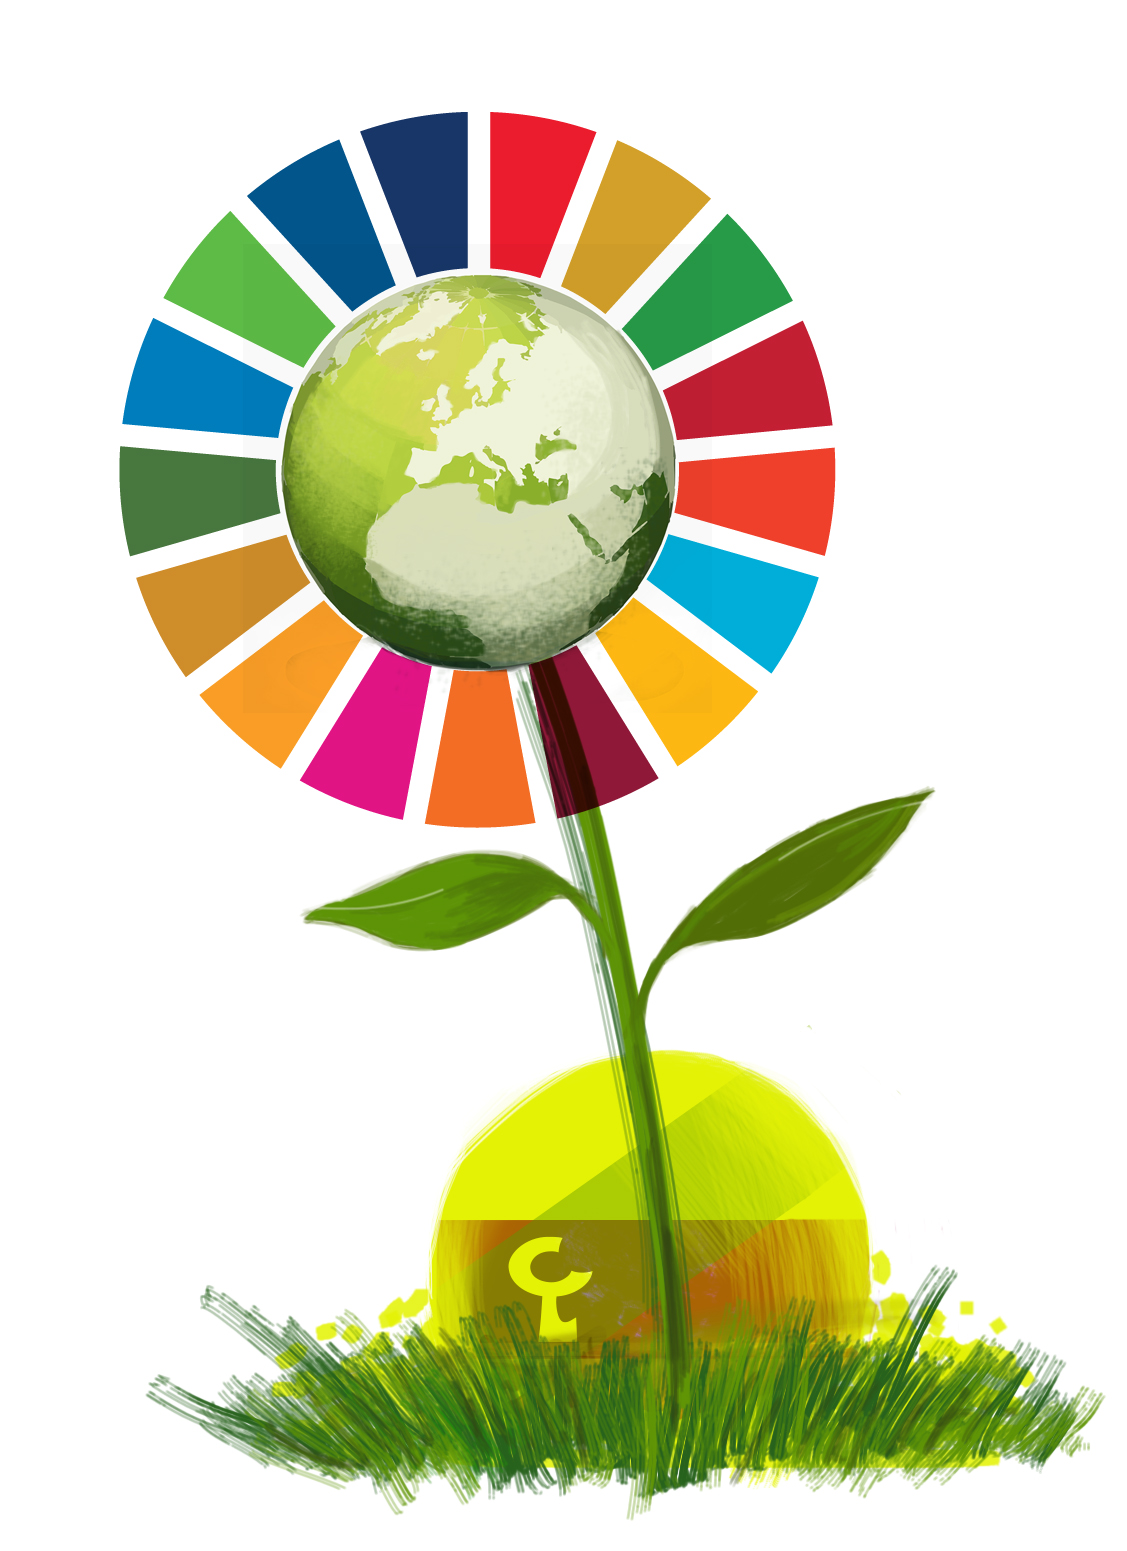 En LABORAL nos unimos los Objetivos de Desarrollo Sostenible de las Naciones Unidas | Laboral